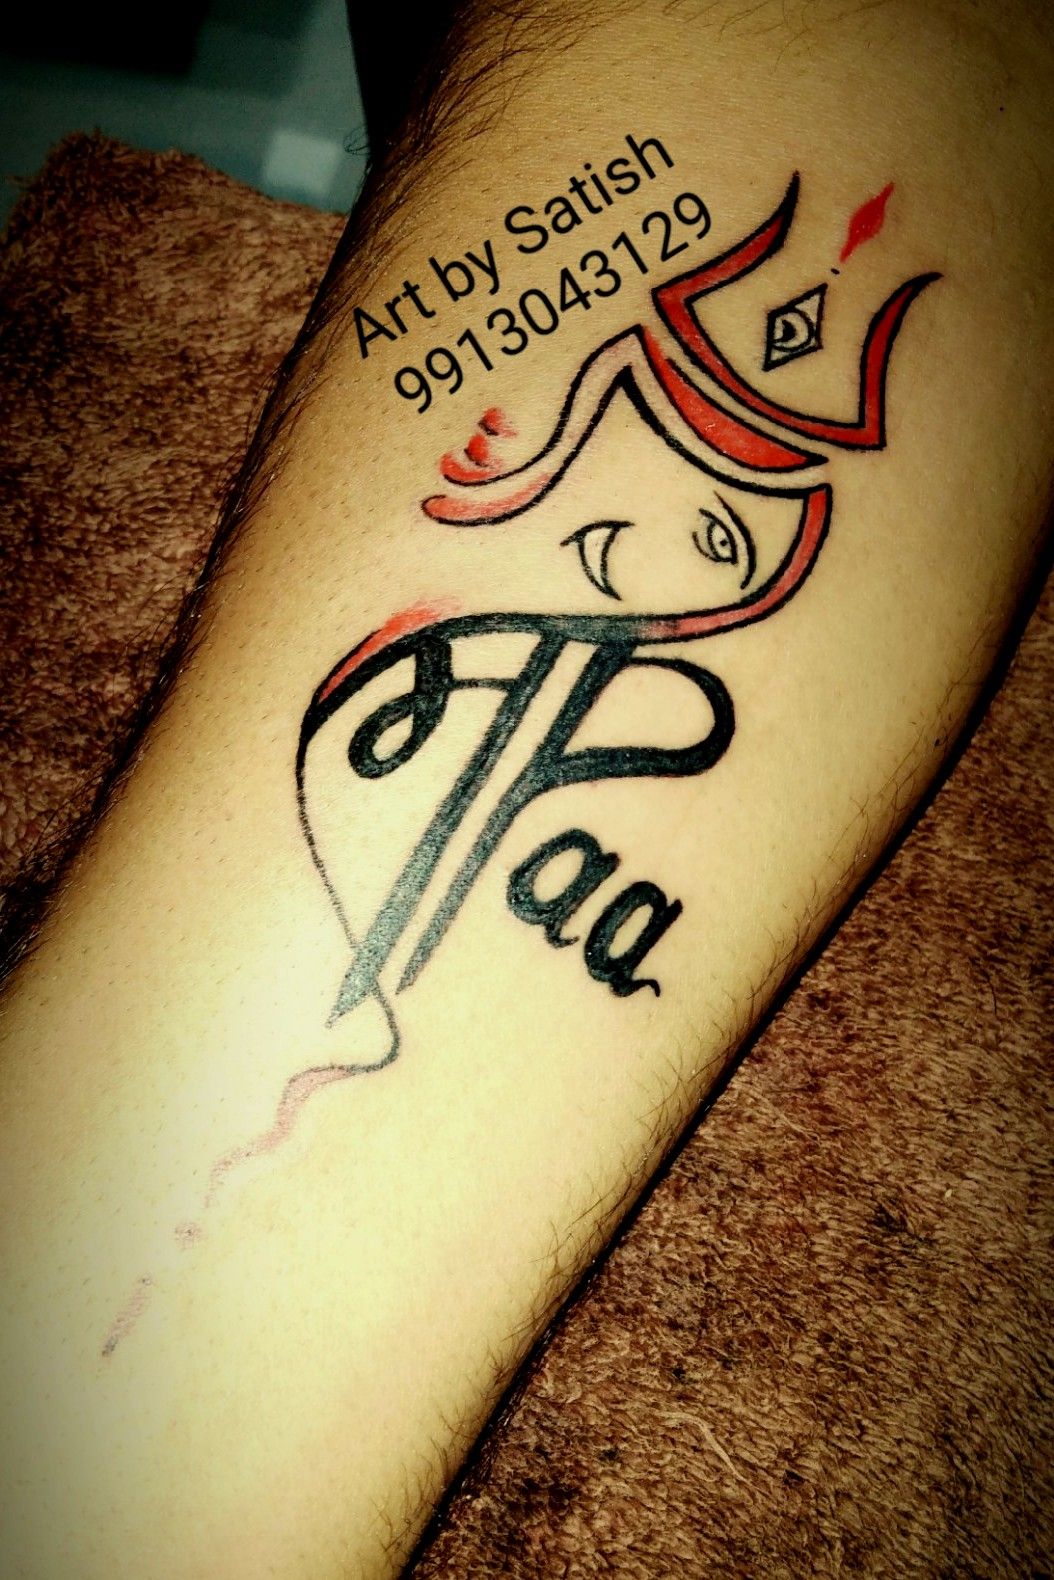 Tattoo uploaded by Rajvinder Singh  maa paa tattoo  Tattoodo